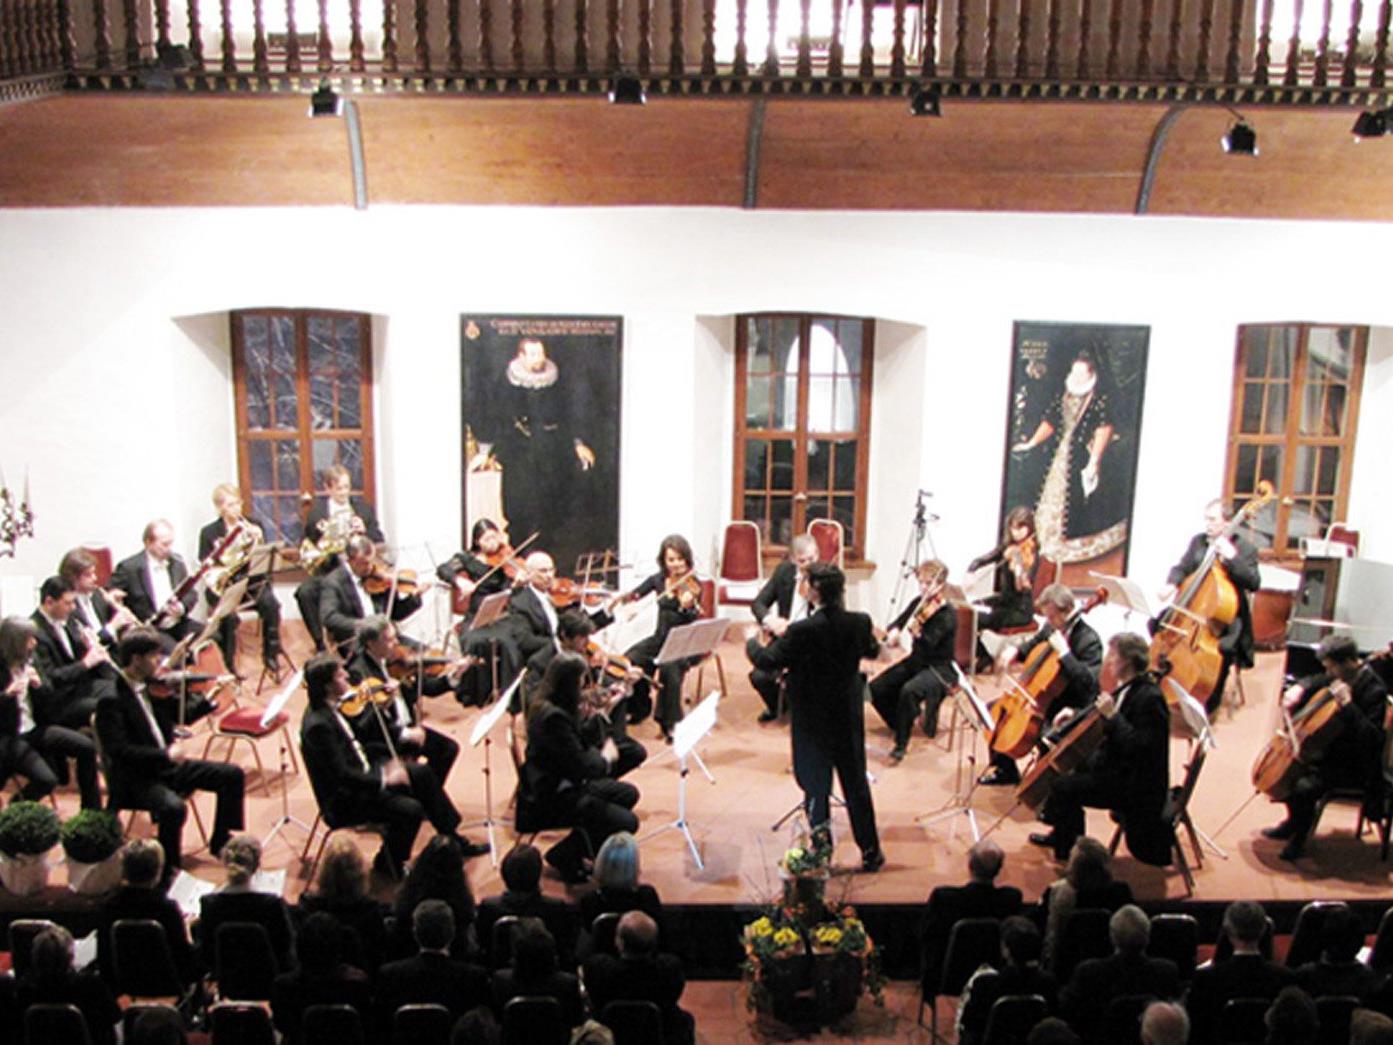 Arpeggione spielt das letzte Konzert dieses Jahres im Rittersaal des Hohenemser Palastes.